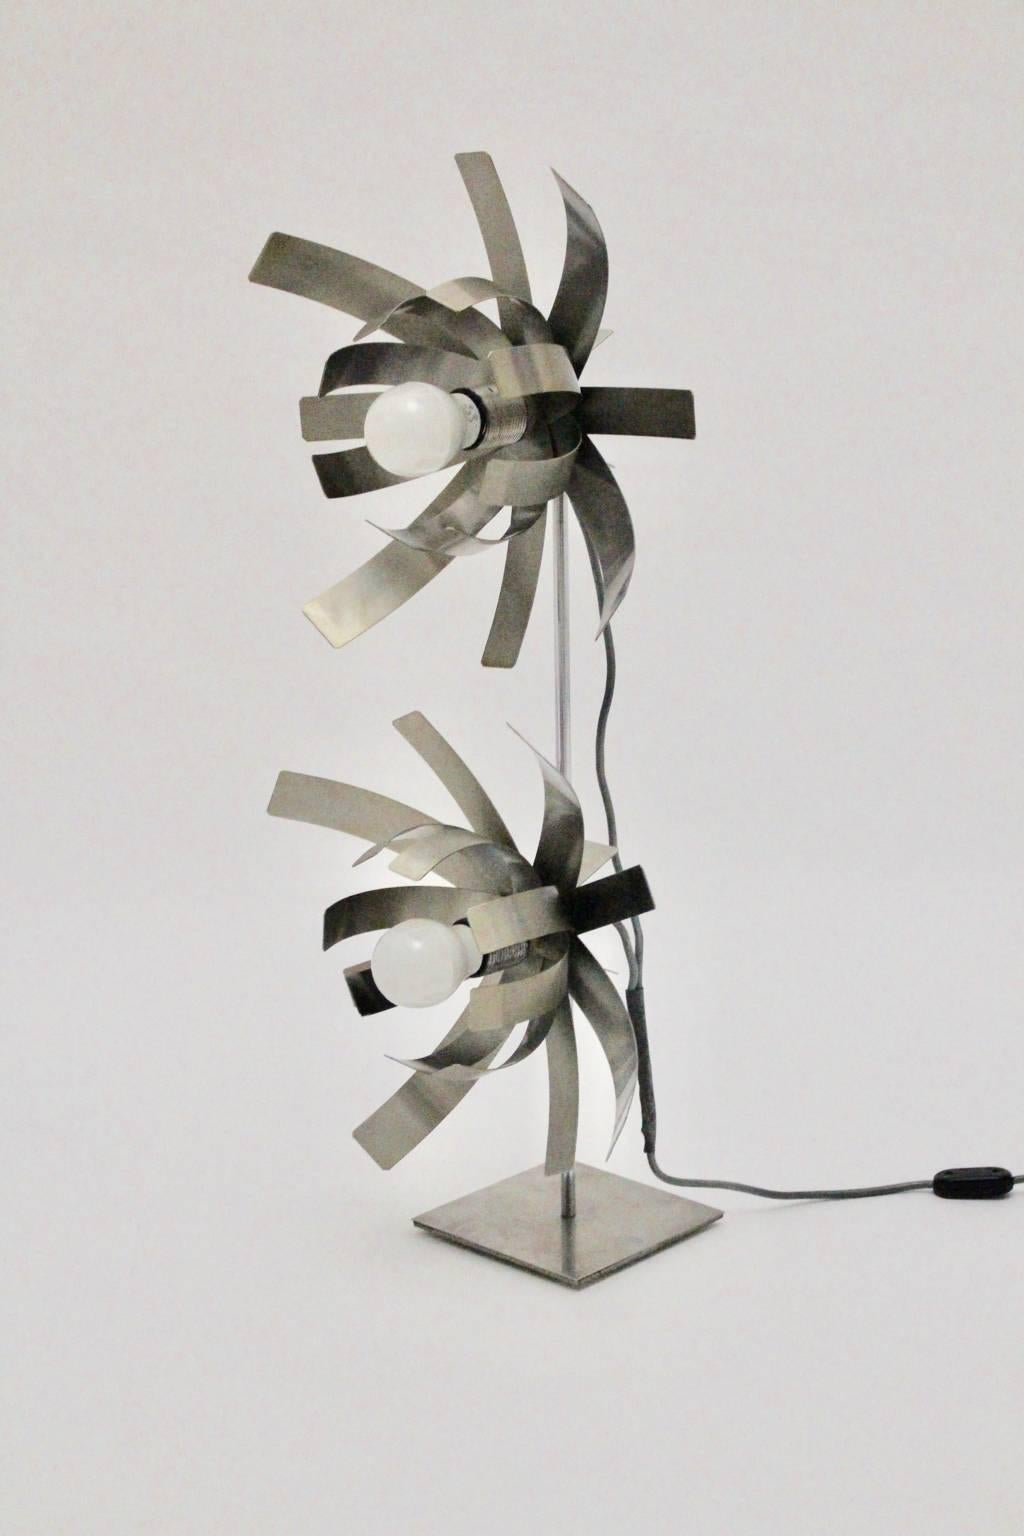 Cette lampe de table ou lampadaire vintage de l'ère spatiale a été conçue par Michel Boyer et fabriquée par la Gallery Oxar, Paris, dans les années 1970.
La lampe de table a été fabriquée en acier inoxydable.
En ce qui concerne les caractéristiques